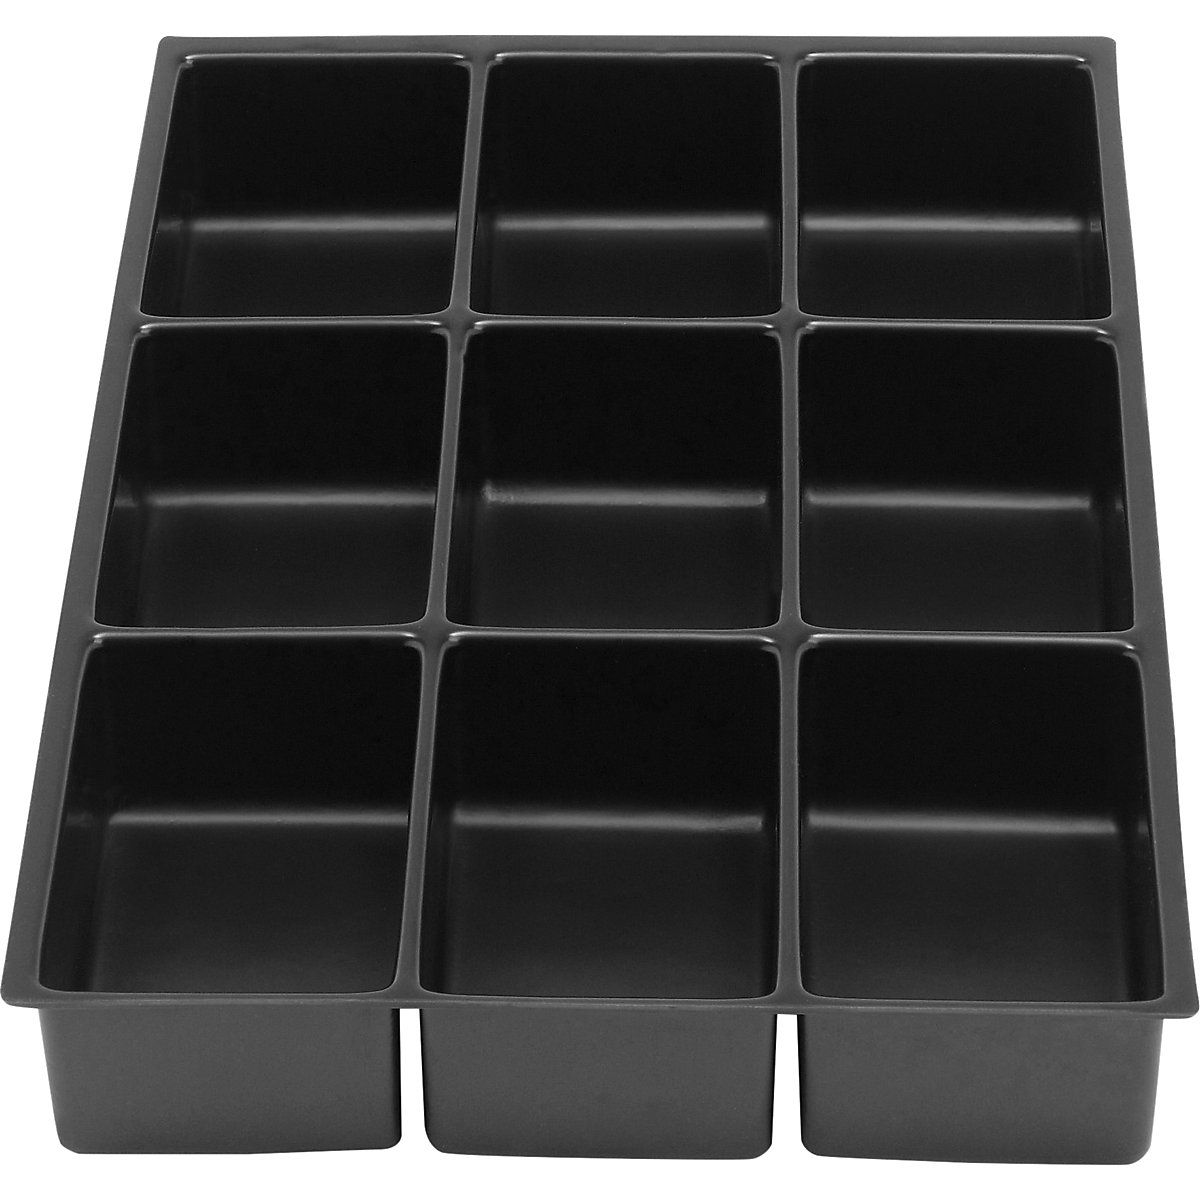 Compartimentation pour tiroir MultiDrawer™ – BISLEY, format A4, hauteur 48 mm, 9 casiers